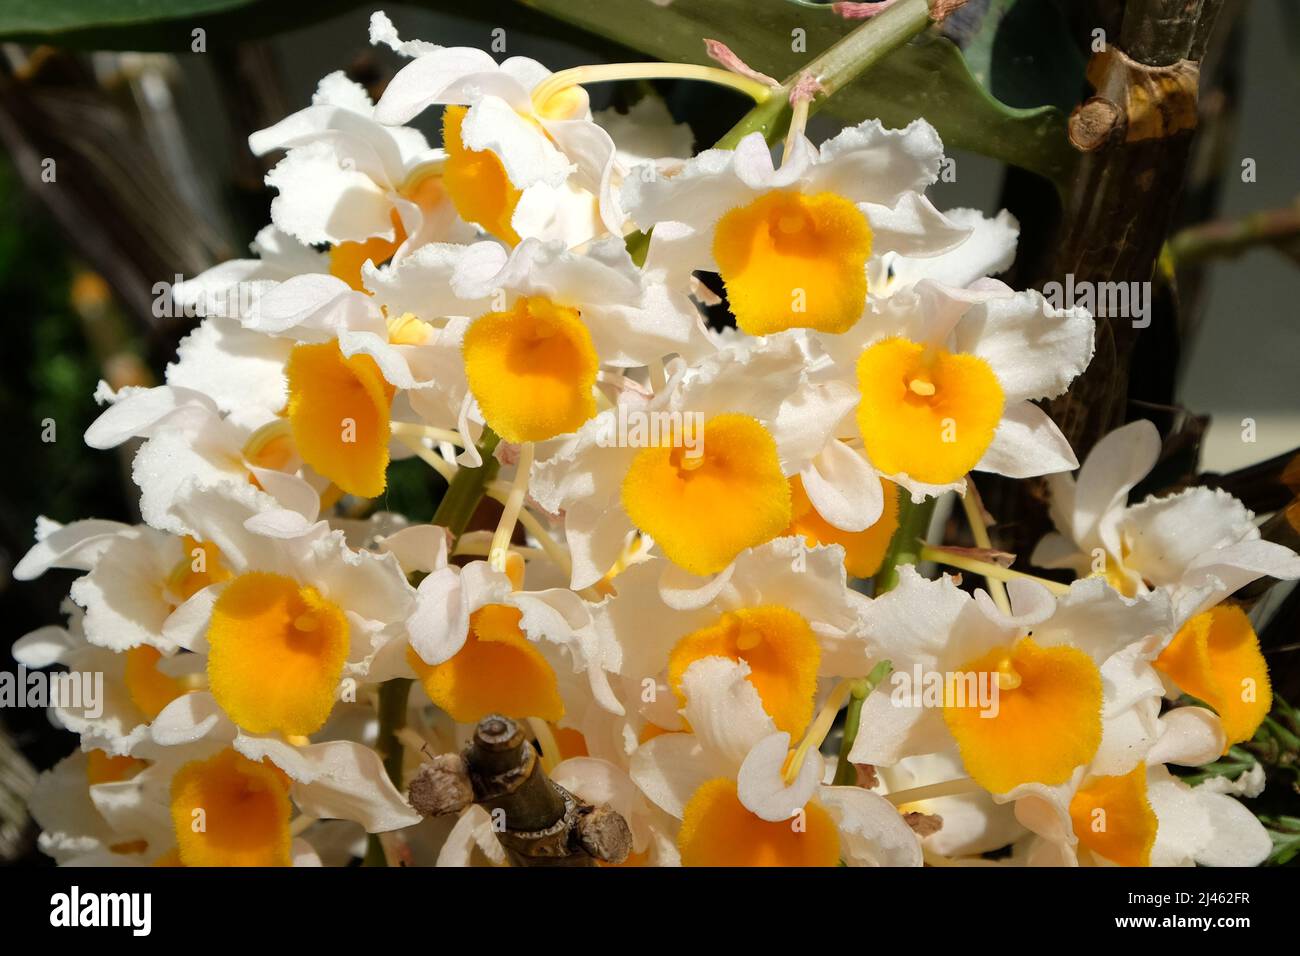 Dendrobium thyrsiflorum Rchb.f. species orchid in flower. Stock Photo